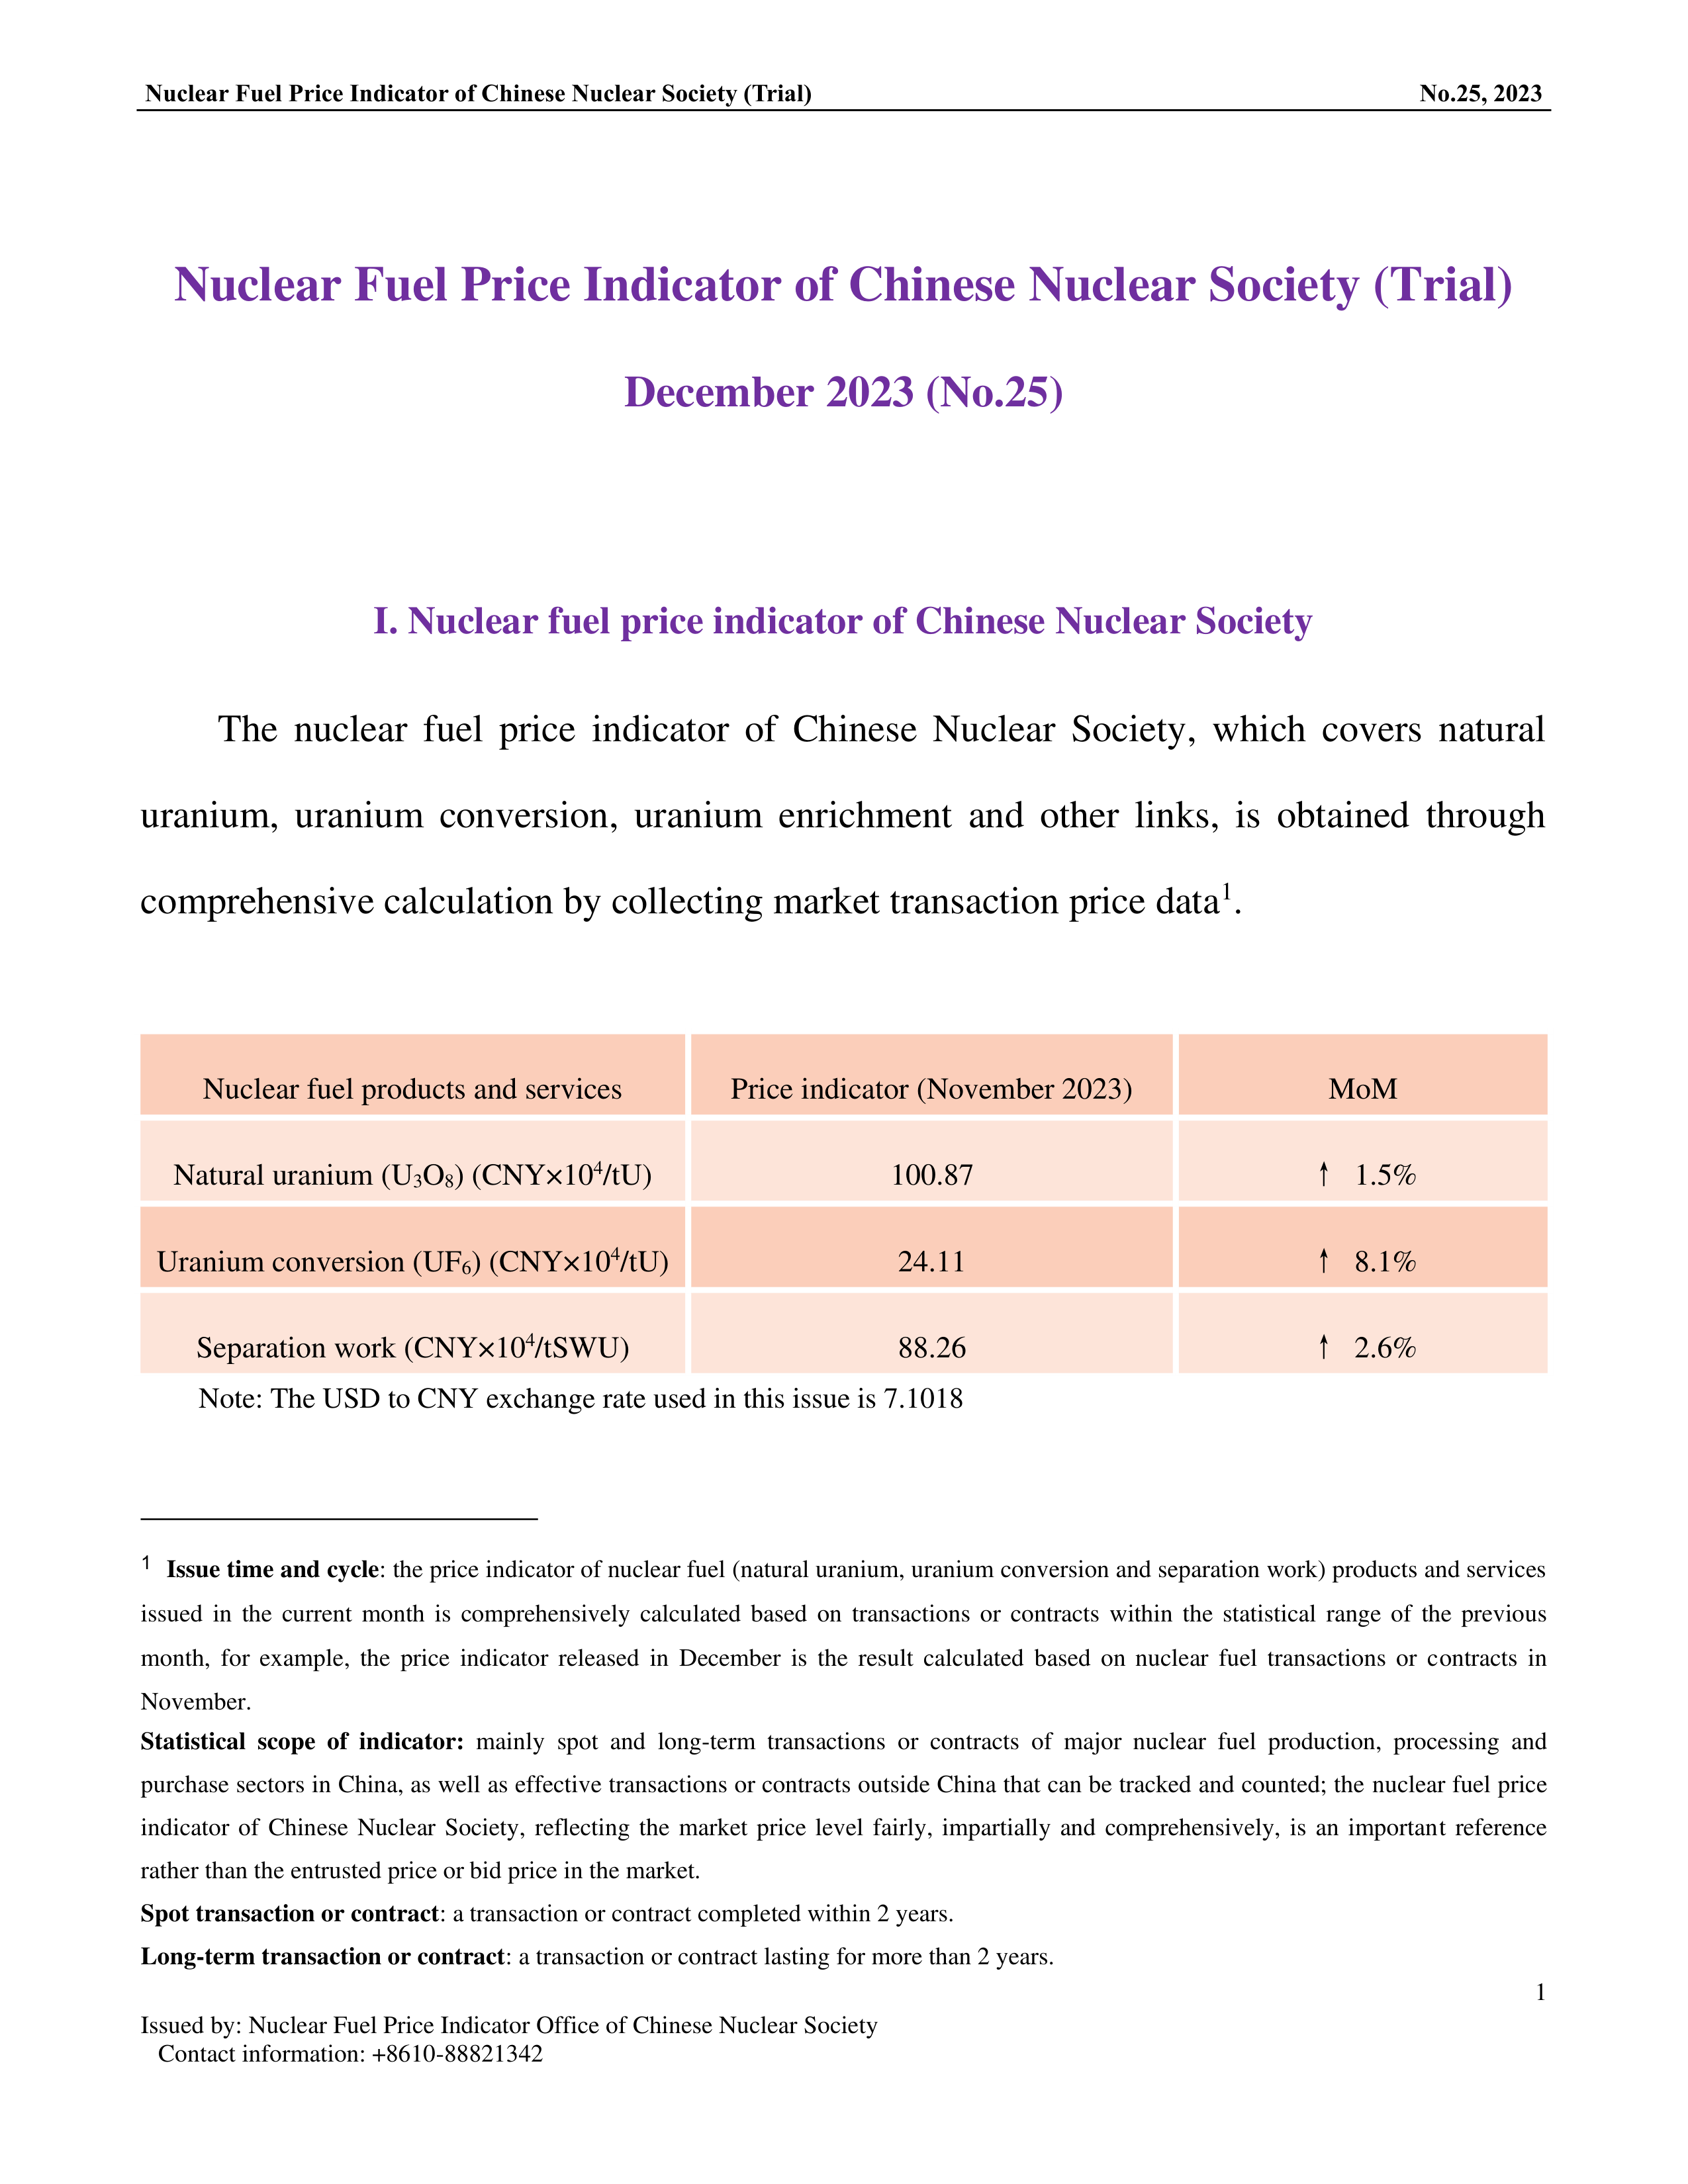 中国核学会核燃料价格指数(试运行)（2023年12月,总第25期）_EN-1.png